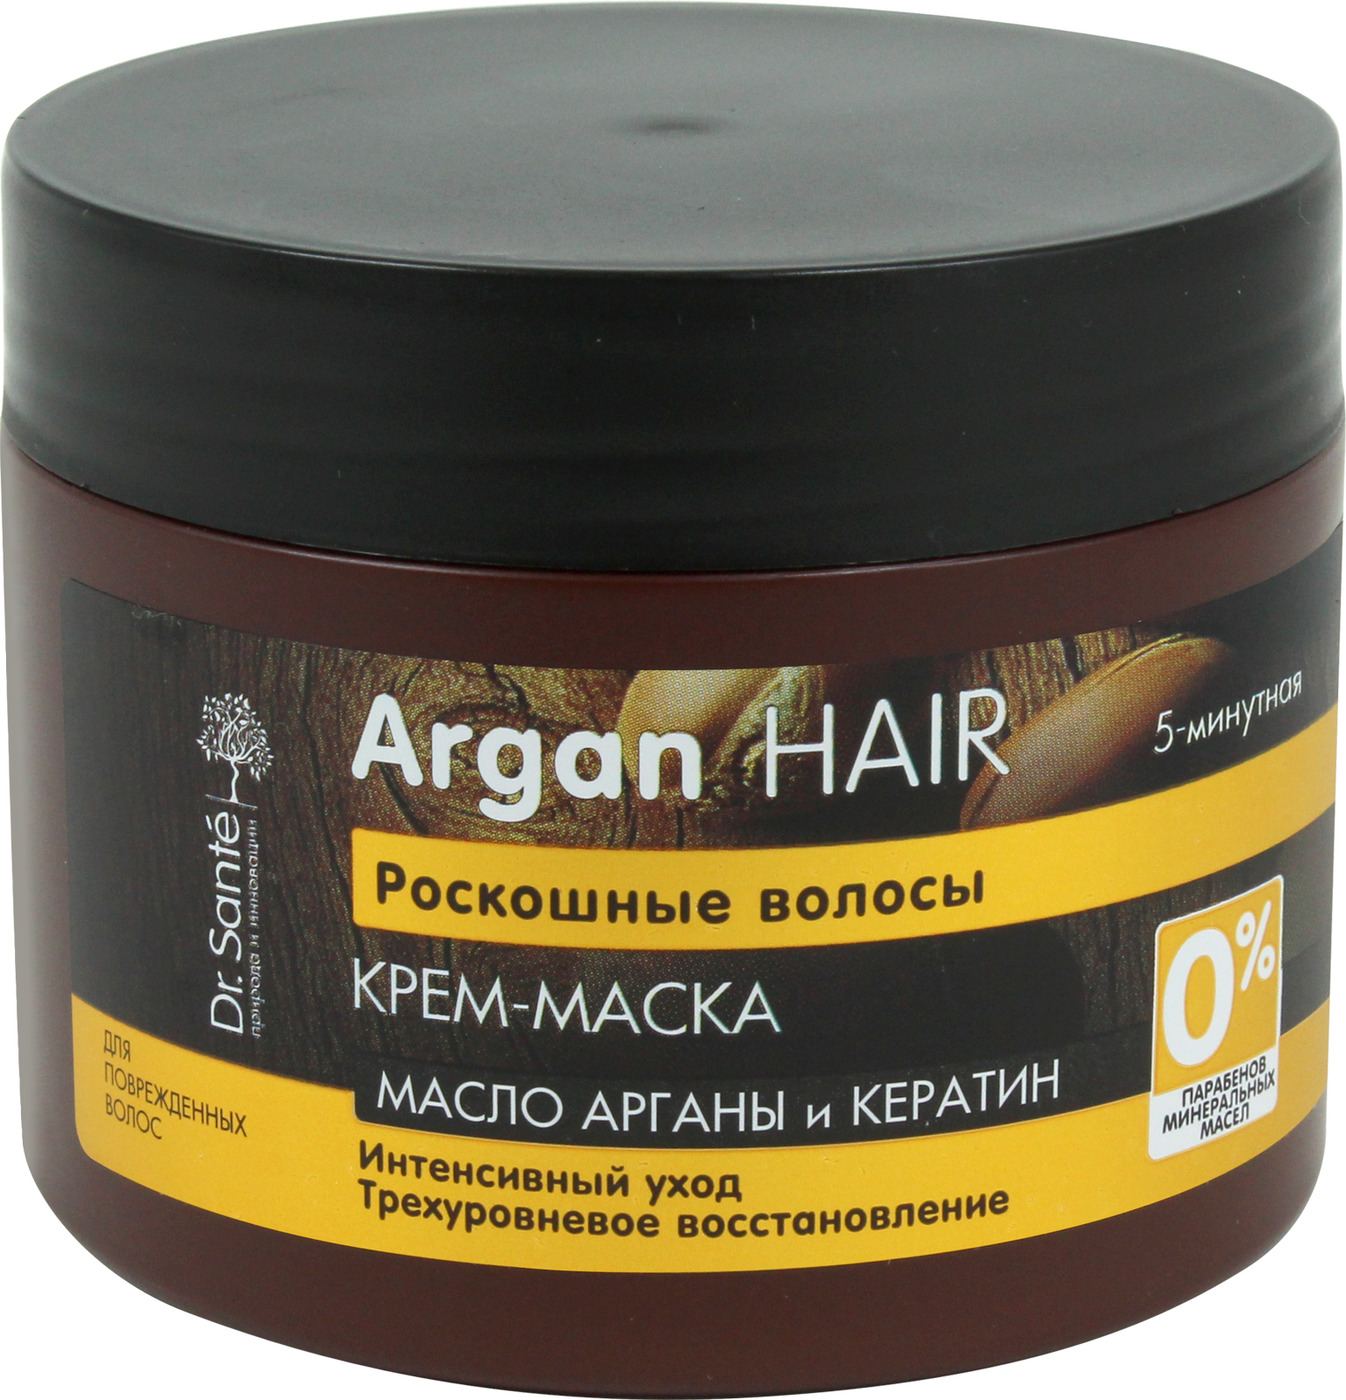 Маска для волос они. Доктор Сантэ (Argan hair маска крем. 300мл д/волос ) эльфа НПО-Украина. Маска для волос для волос аргани кератин Хеар. Маска для волос Argan hair с кератином. Витекс маска с кератином.